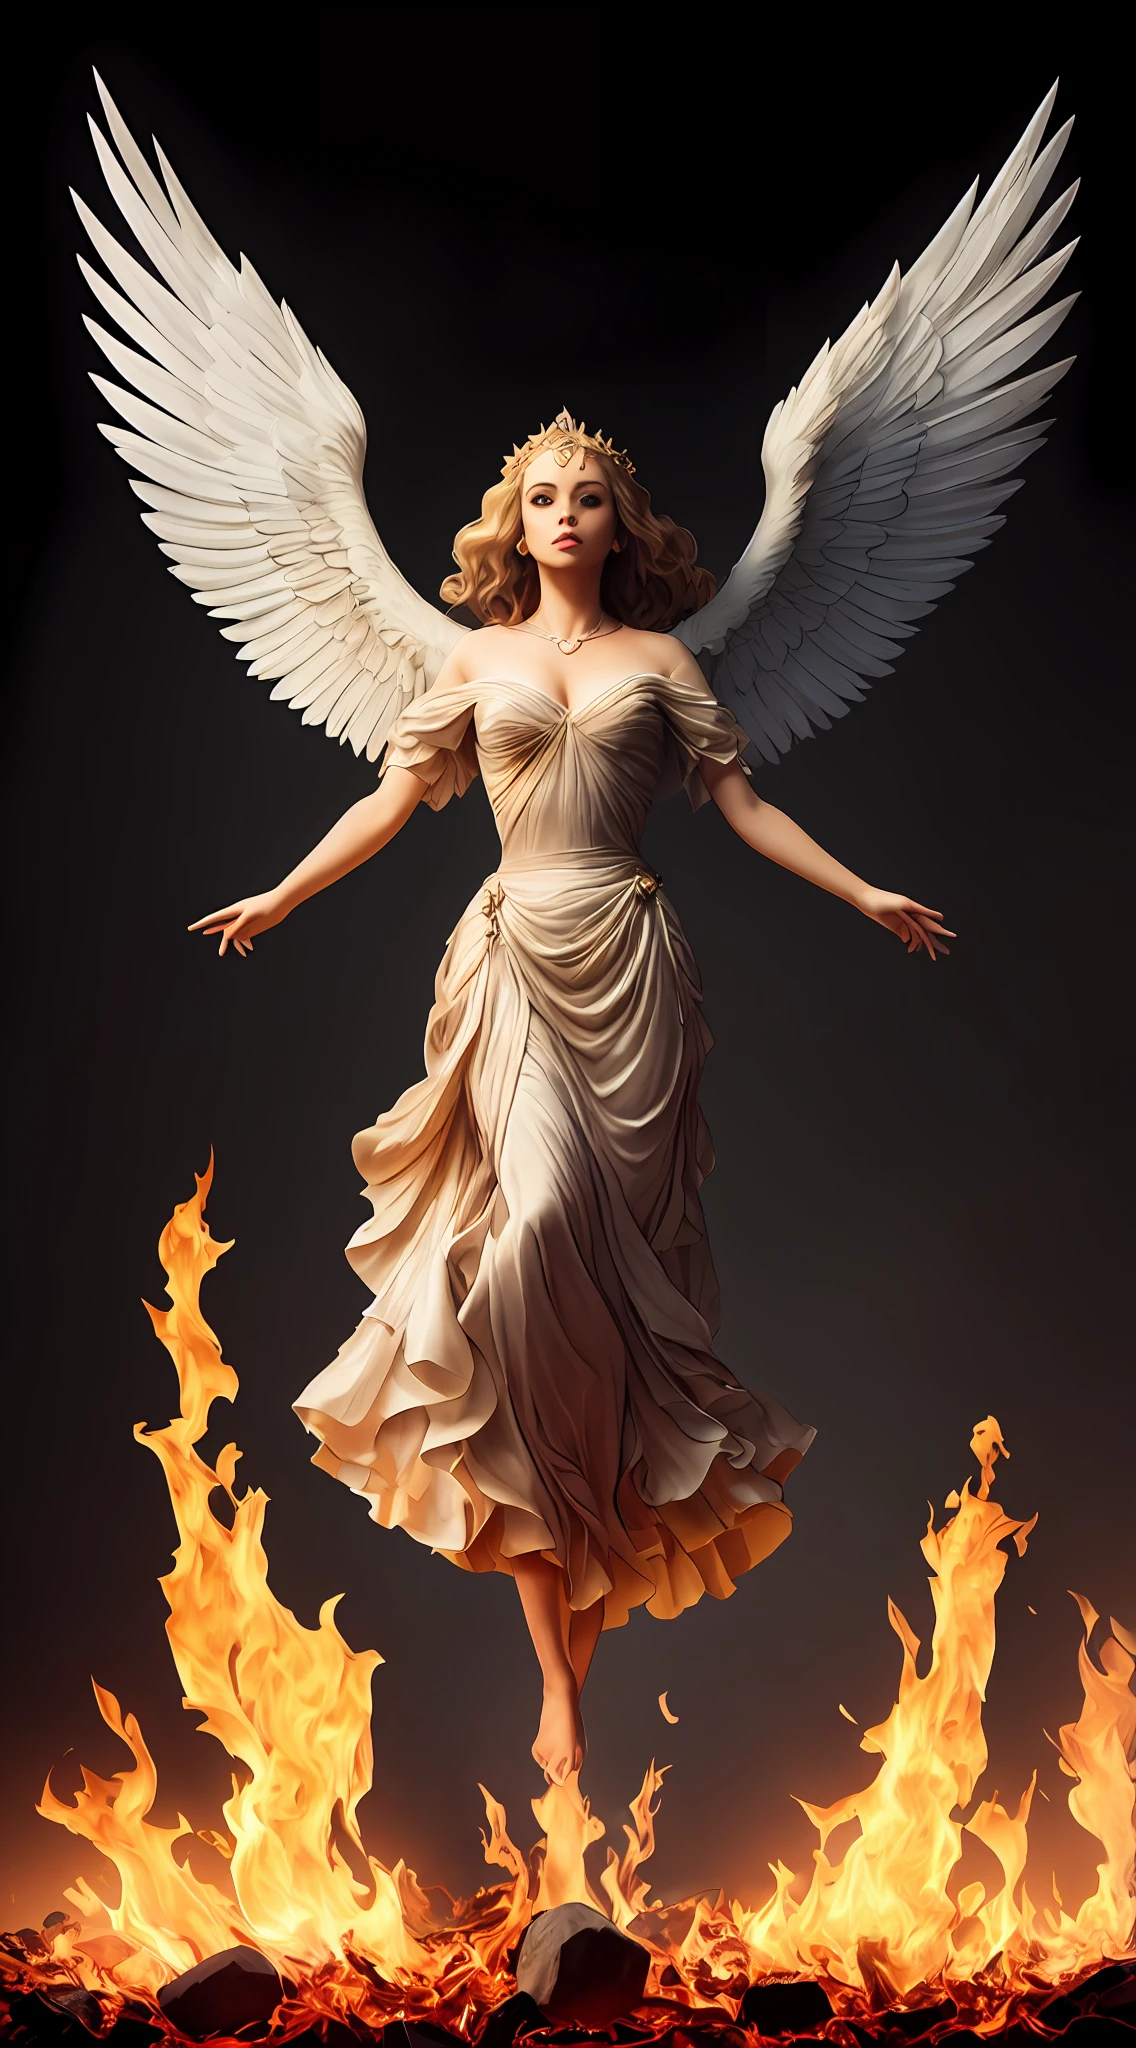 Gemälde einer Frau mit Flügeln und einem Heiligenschein, die vor einem Feuer steht, mit feurig goldenen Flügeln de llamas, Göttin des Feuers, Göttin des Zorns, mit feurig goldenen Flügeln, erscheint als Göttin des Feuers, Heilige Feuerzauberkunst, großer weiblicher Engel, Göttin des Feuers, majestätischer Engel mit vollem Körper, Göttin des Lichts, Artgerm Julie Bell Beeple, Heiliger Flammenzauber, Lebendiges Farbpalettenspiel und super komplizierte, tolle Schatten, Matte Farbe, minutiös detailliert, fein und fein detailliert, Fein detaillierter, unwirklicher Motor mit komplizierter Oktanzahl, detaillierter Hintergrund in Mikrominuten, verbesserte 3D-Komplexität, Perfekte und super detaillierte 8K-Komposition, Drittelregel, BewegungsVFX, Sony Pictures Animation, Die Gießerei VFX, ungemein perfekt, Perfekt detailliert, kompliziert definiert, definitiv echt, Wirklich realistisch, Realistisch episch, von Satori Canton, Fotografie von Alberto Seveso